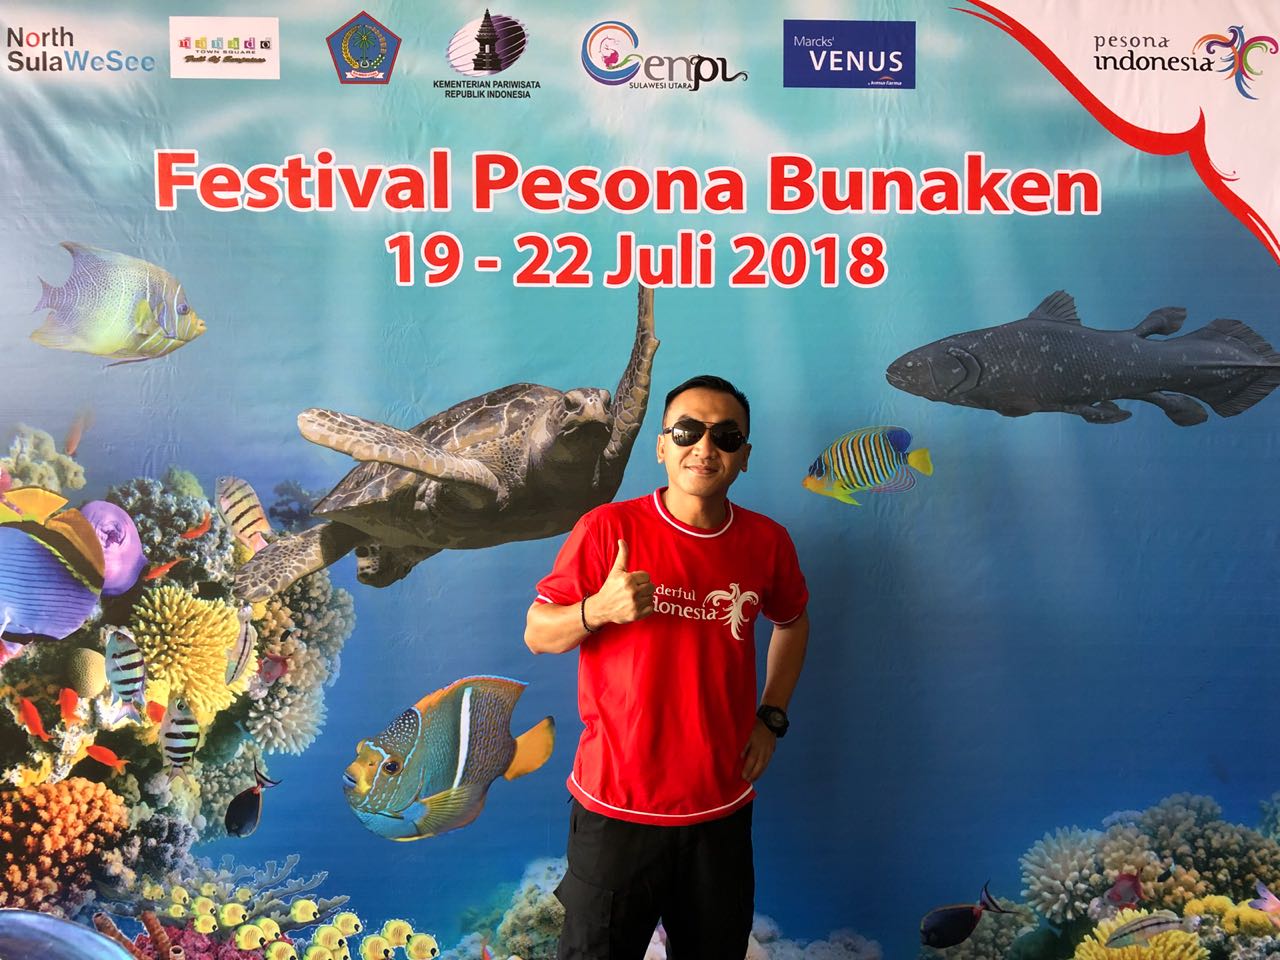 Sudah dibuka, Festival Pesona Bunaken 2018. Ayo tunggu apalagi, cari tiket dan penginapan ya. foto:dispar sulut.